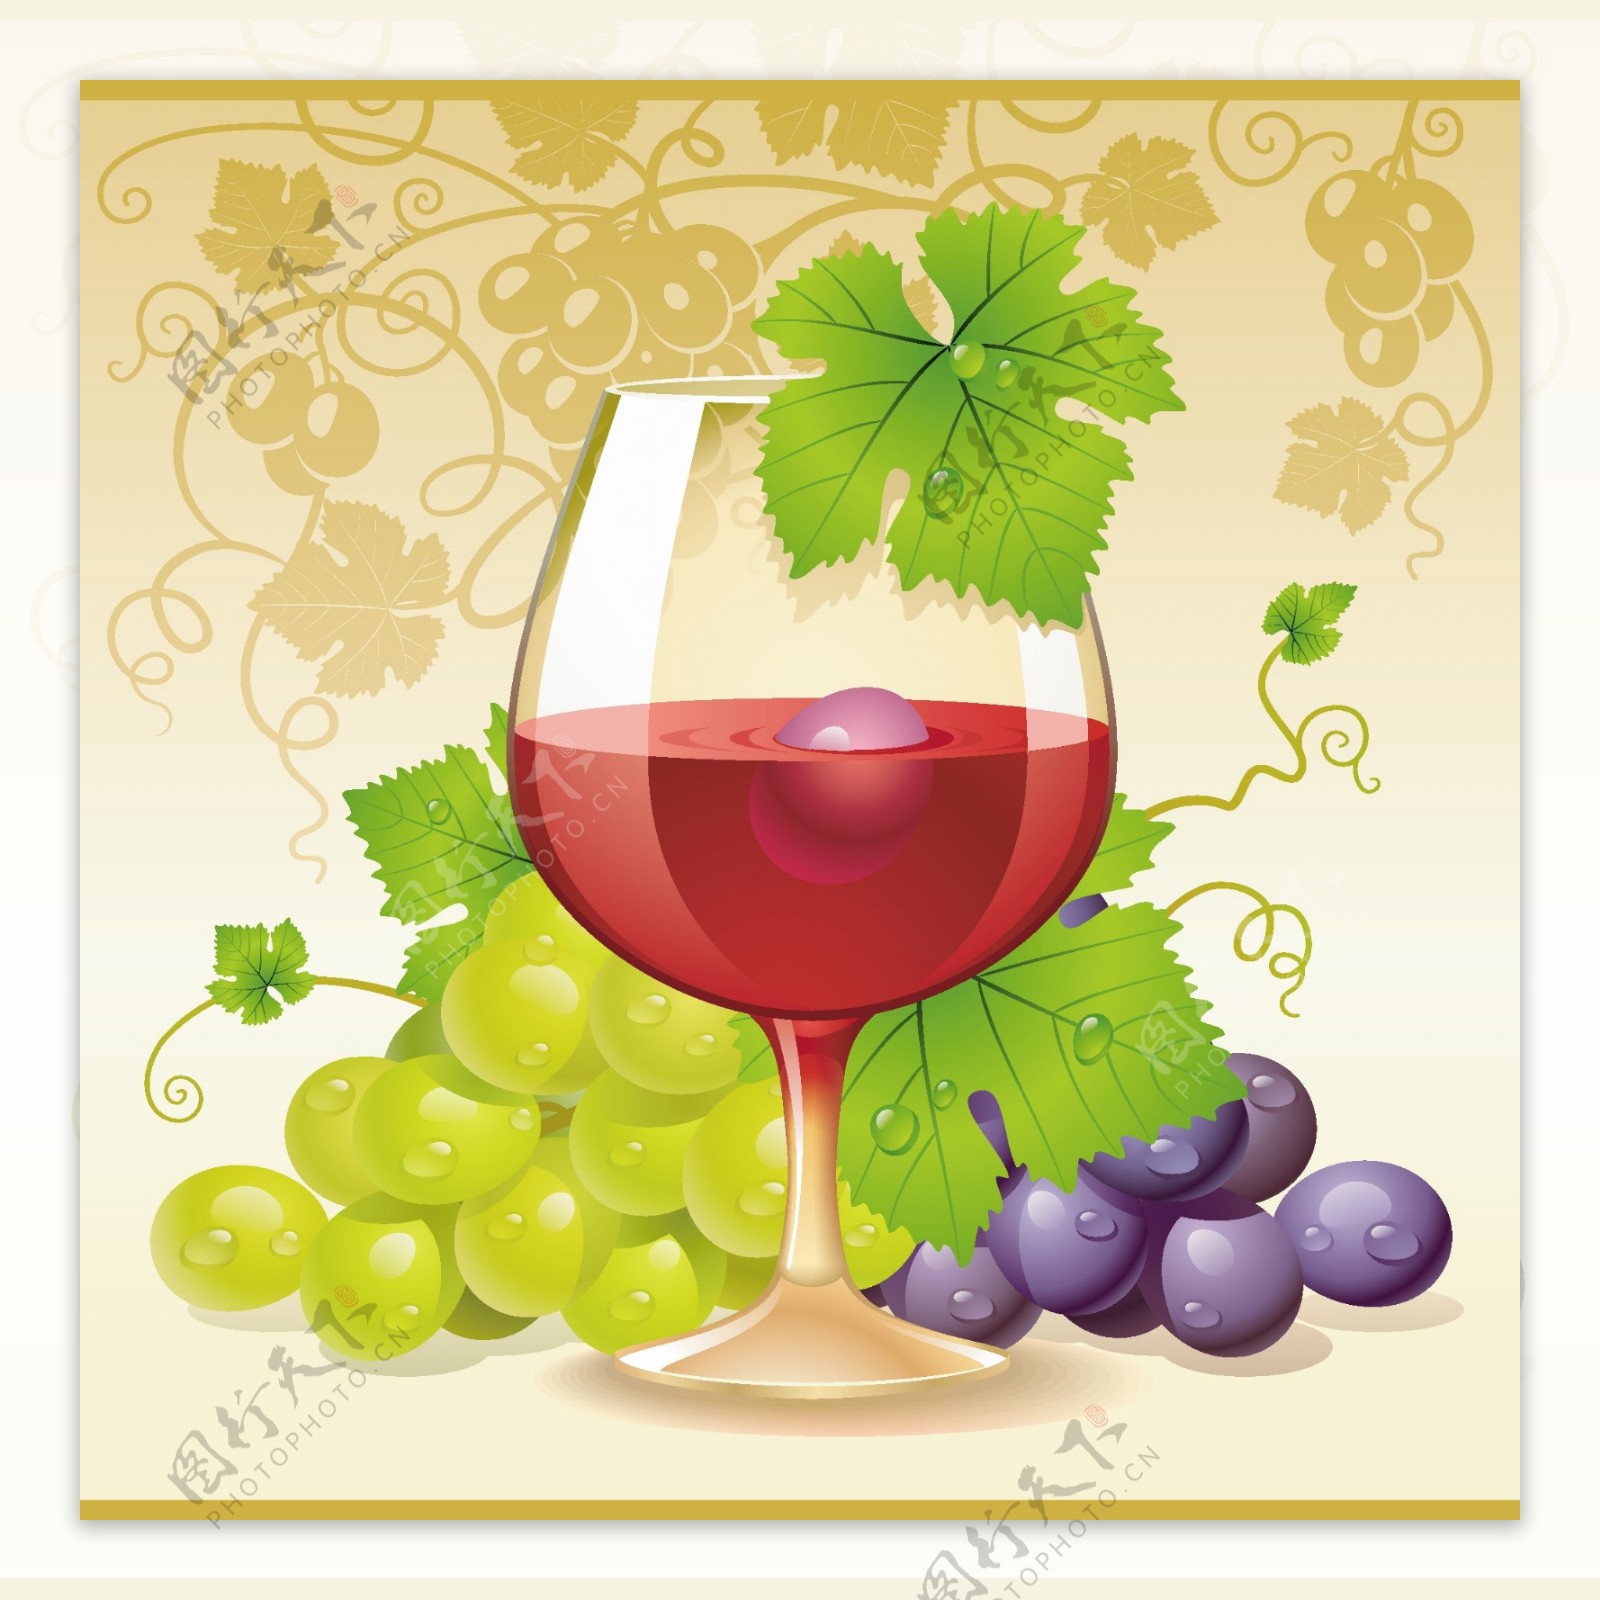 葡萄酒和葡萄向量